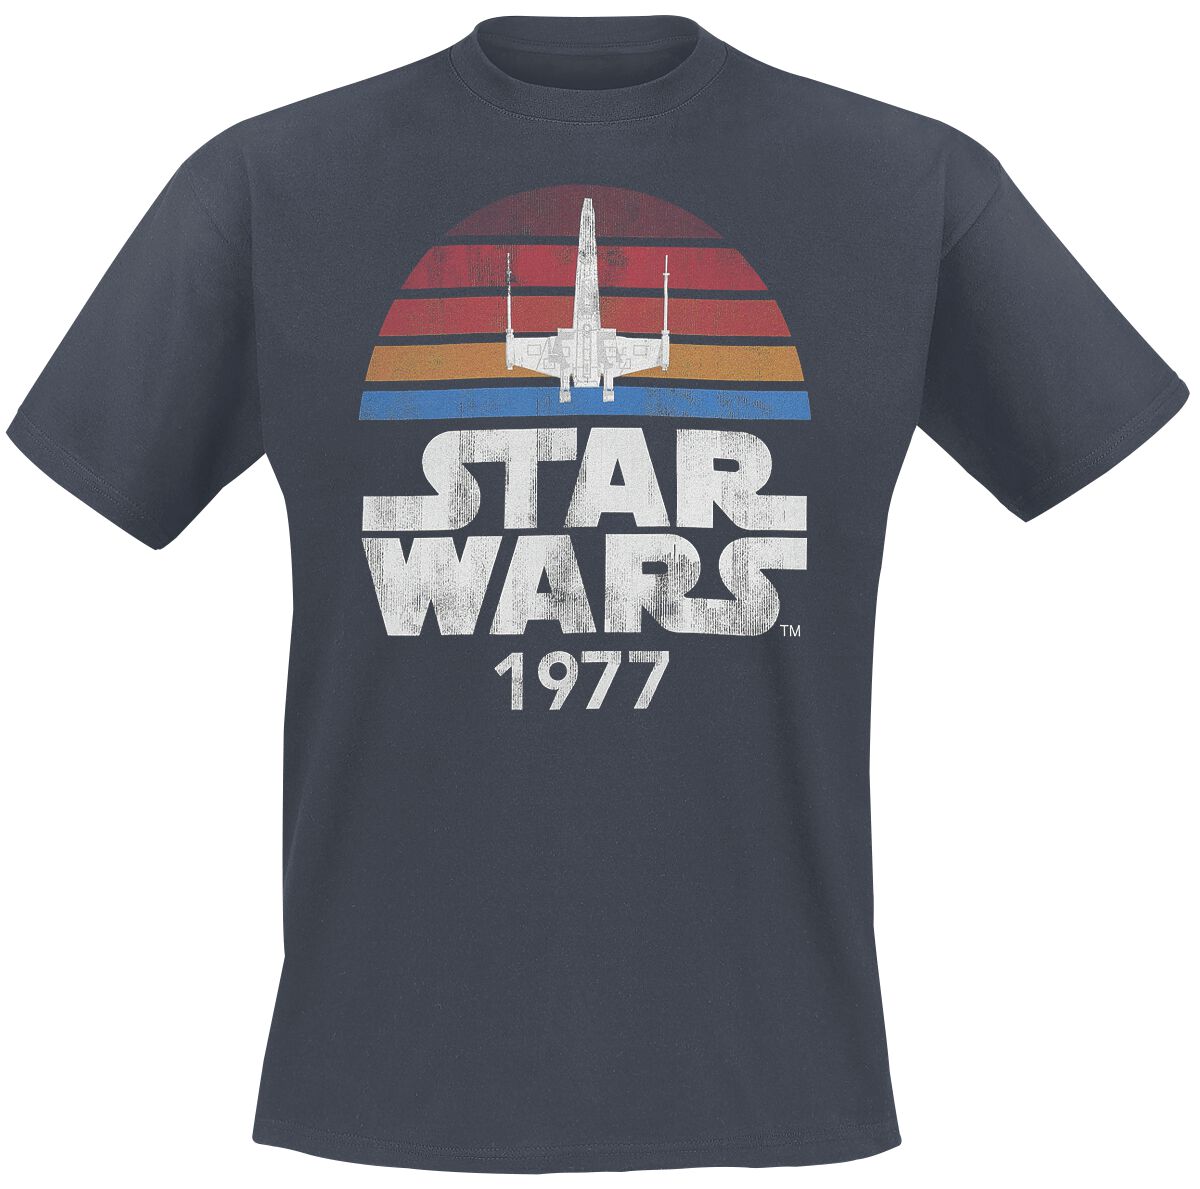 Star Wars T-Shirt - Since 1977 - S bis XXL - für Männer - Größe XXL - anthrazit  - Lizenzierter Fanartikel